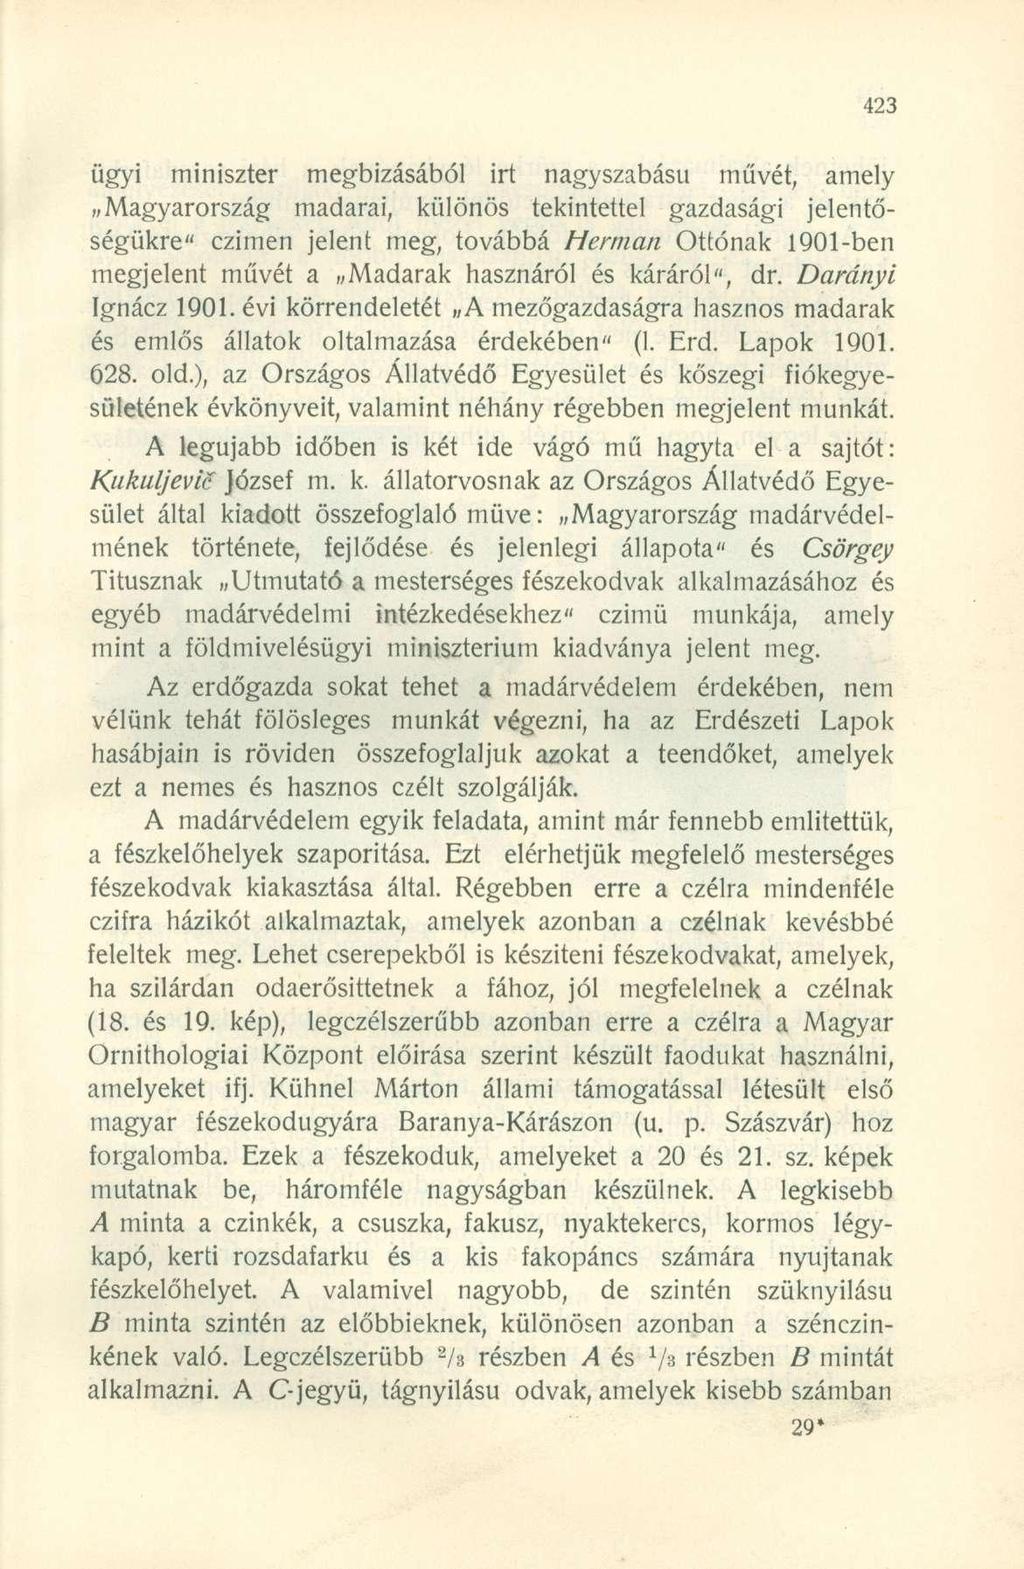 ügyi miniszter megbízásából irt nagyszabású művét, amely Magyarország madarai, különös tekintettel gazdasági jelentőségükre" czimen jelent meg, továbbá Hermán Ottónak 1901-ben megjelent művét a